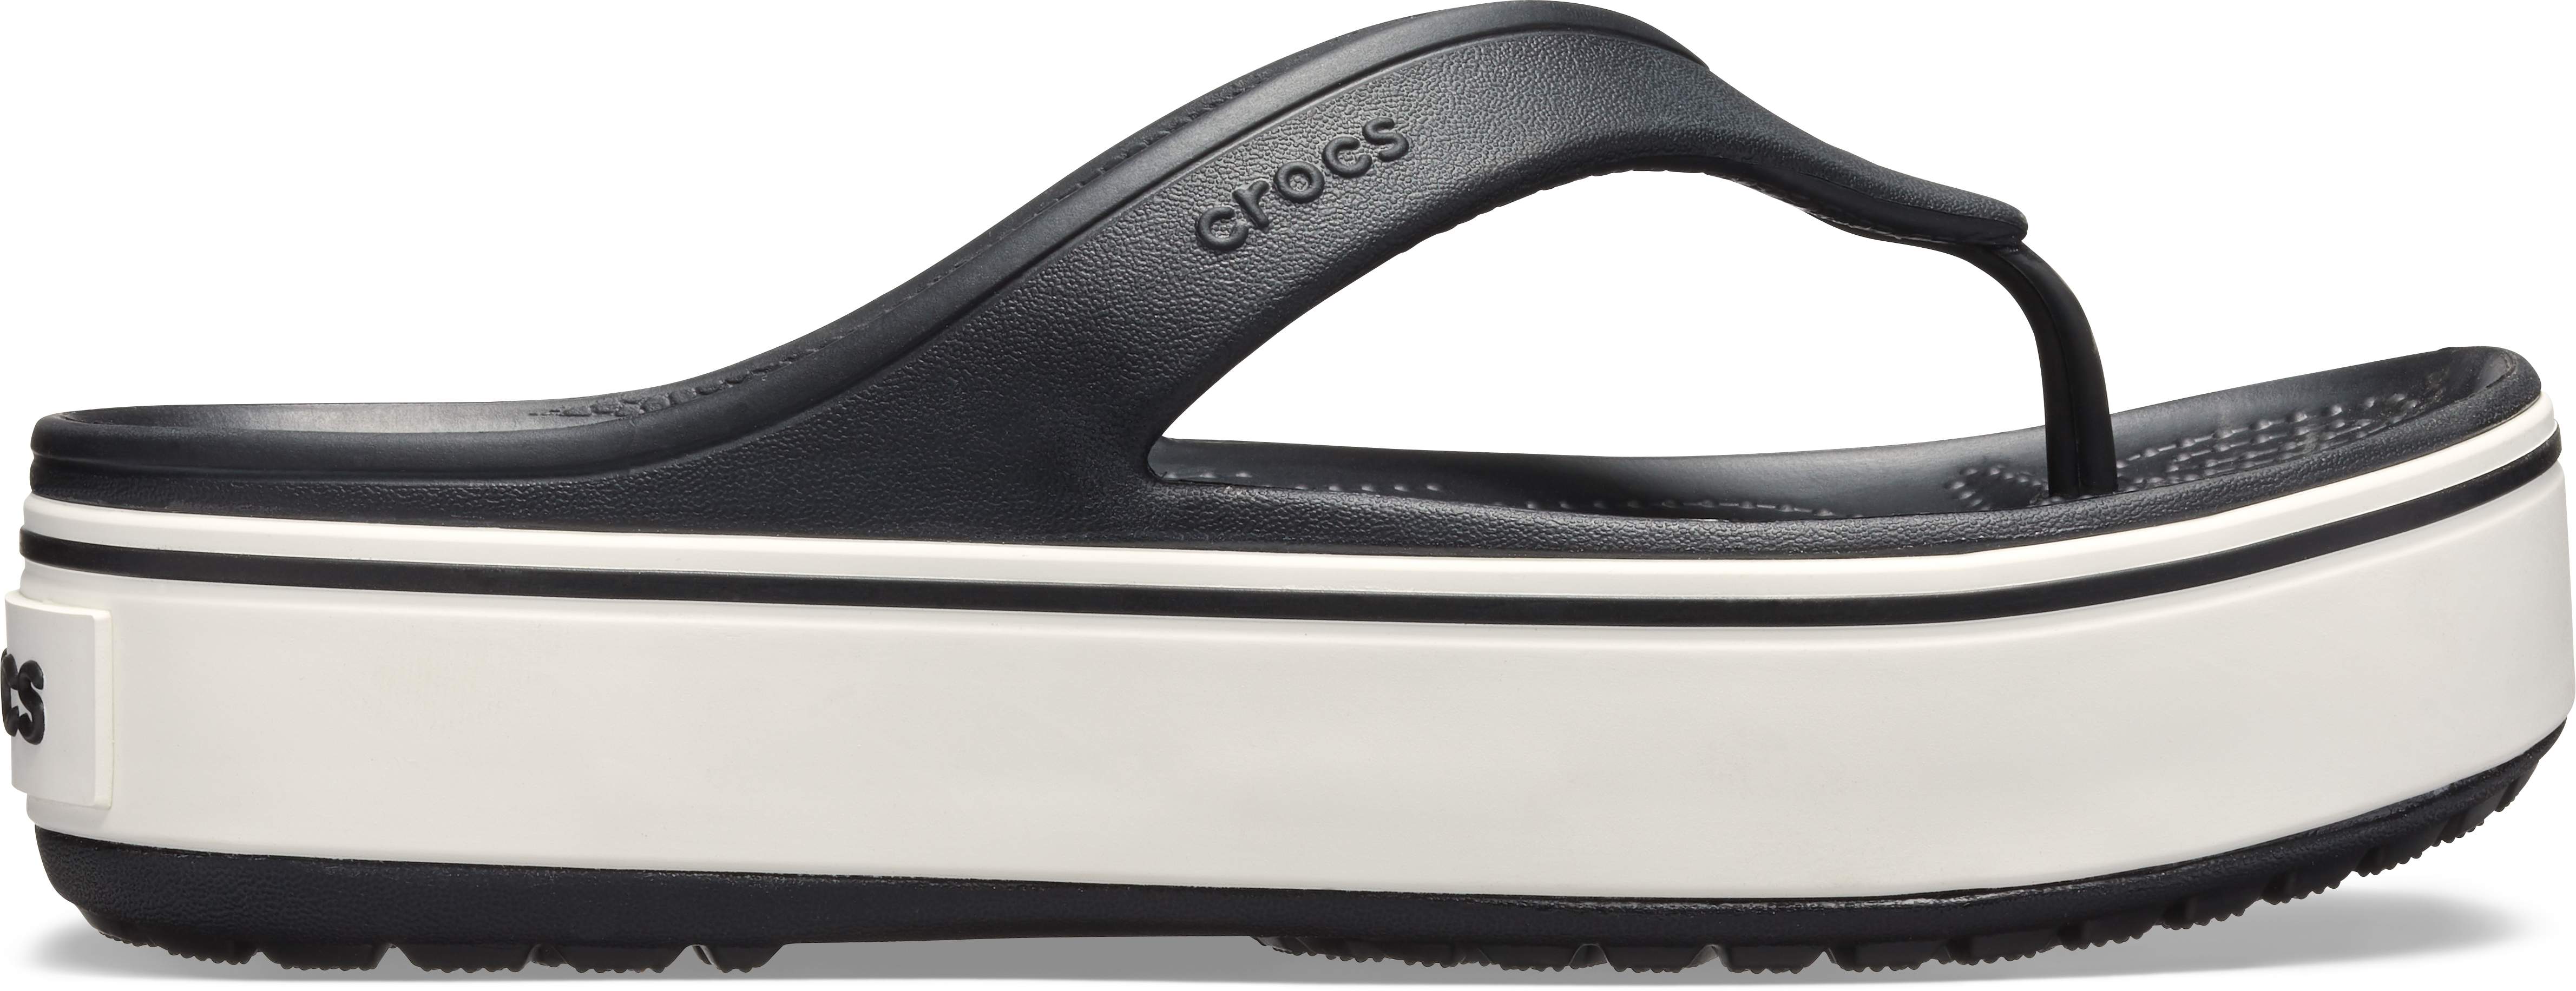 crocs platform flip flops